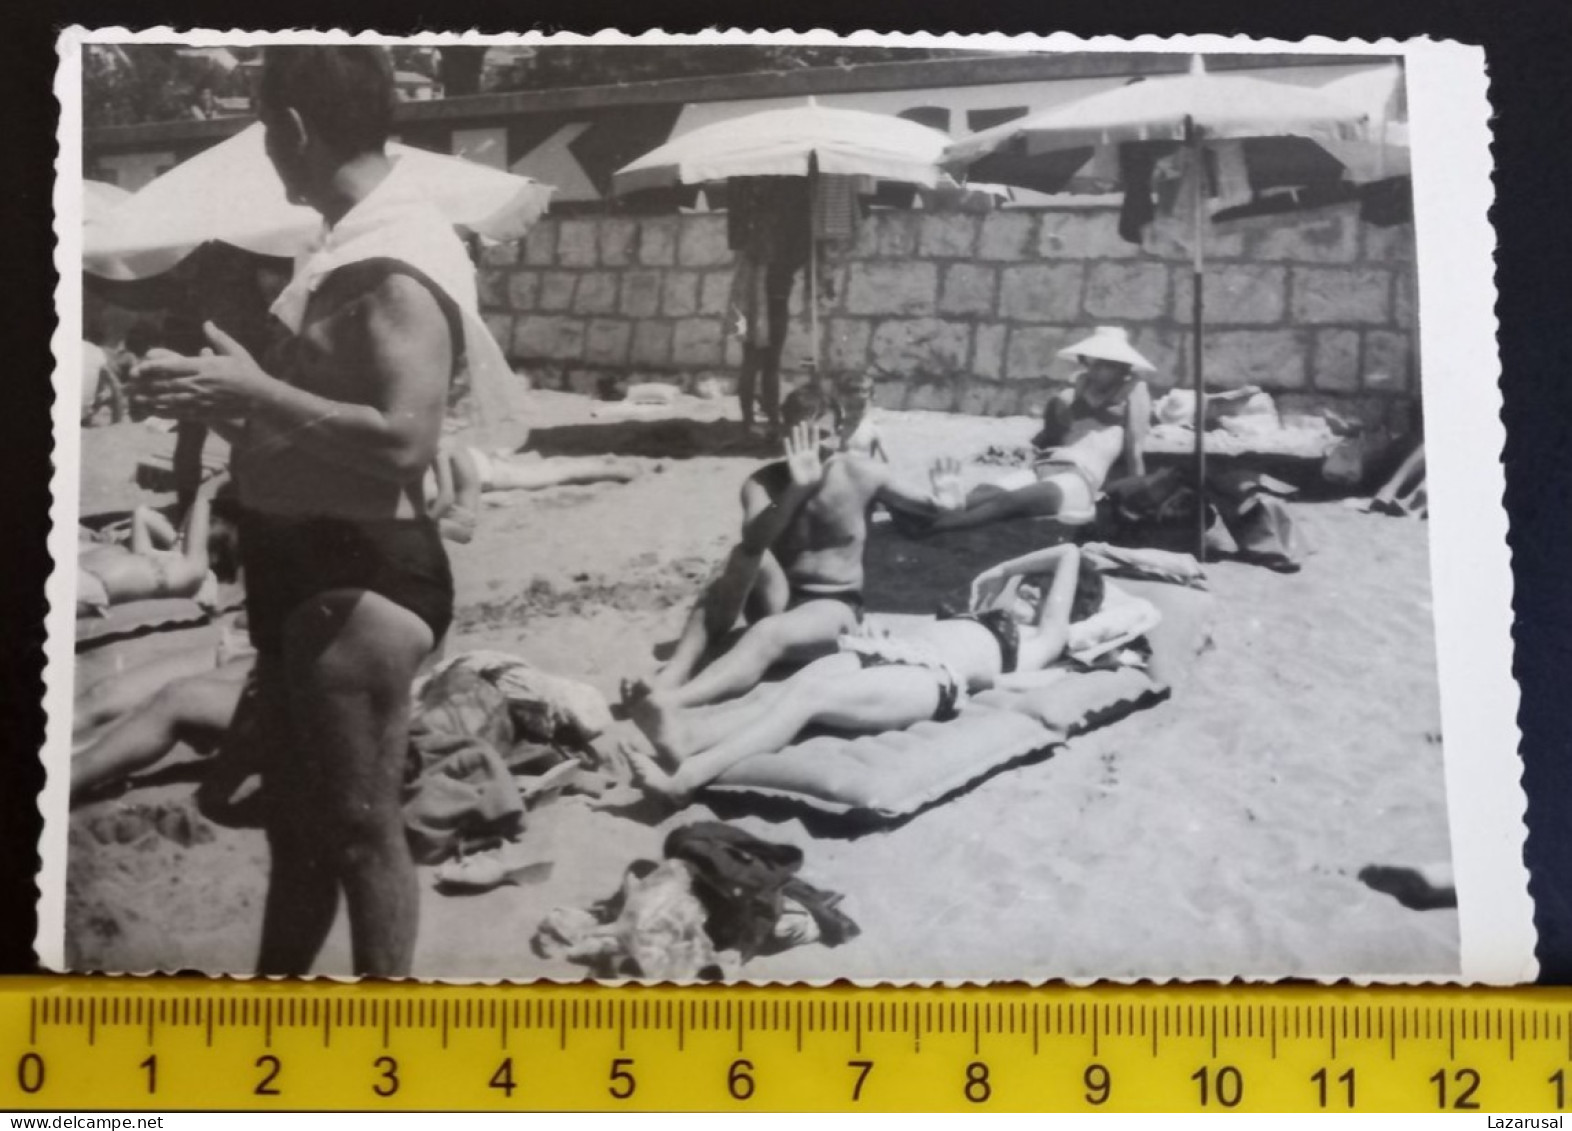 #15   Man On Vacation - On The Beach In A Bathing Suit / Homme En Vacances - Sur La Plage En Maillot De Bain - Anonymous Persons